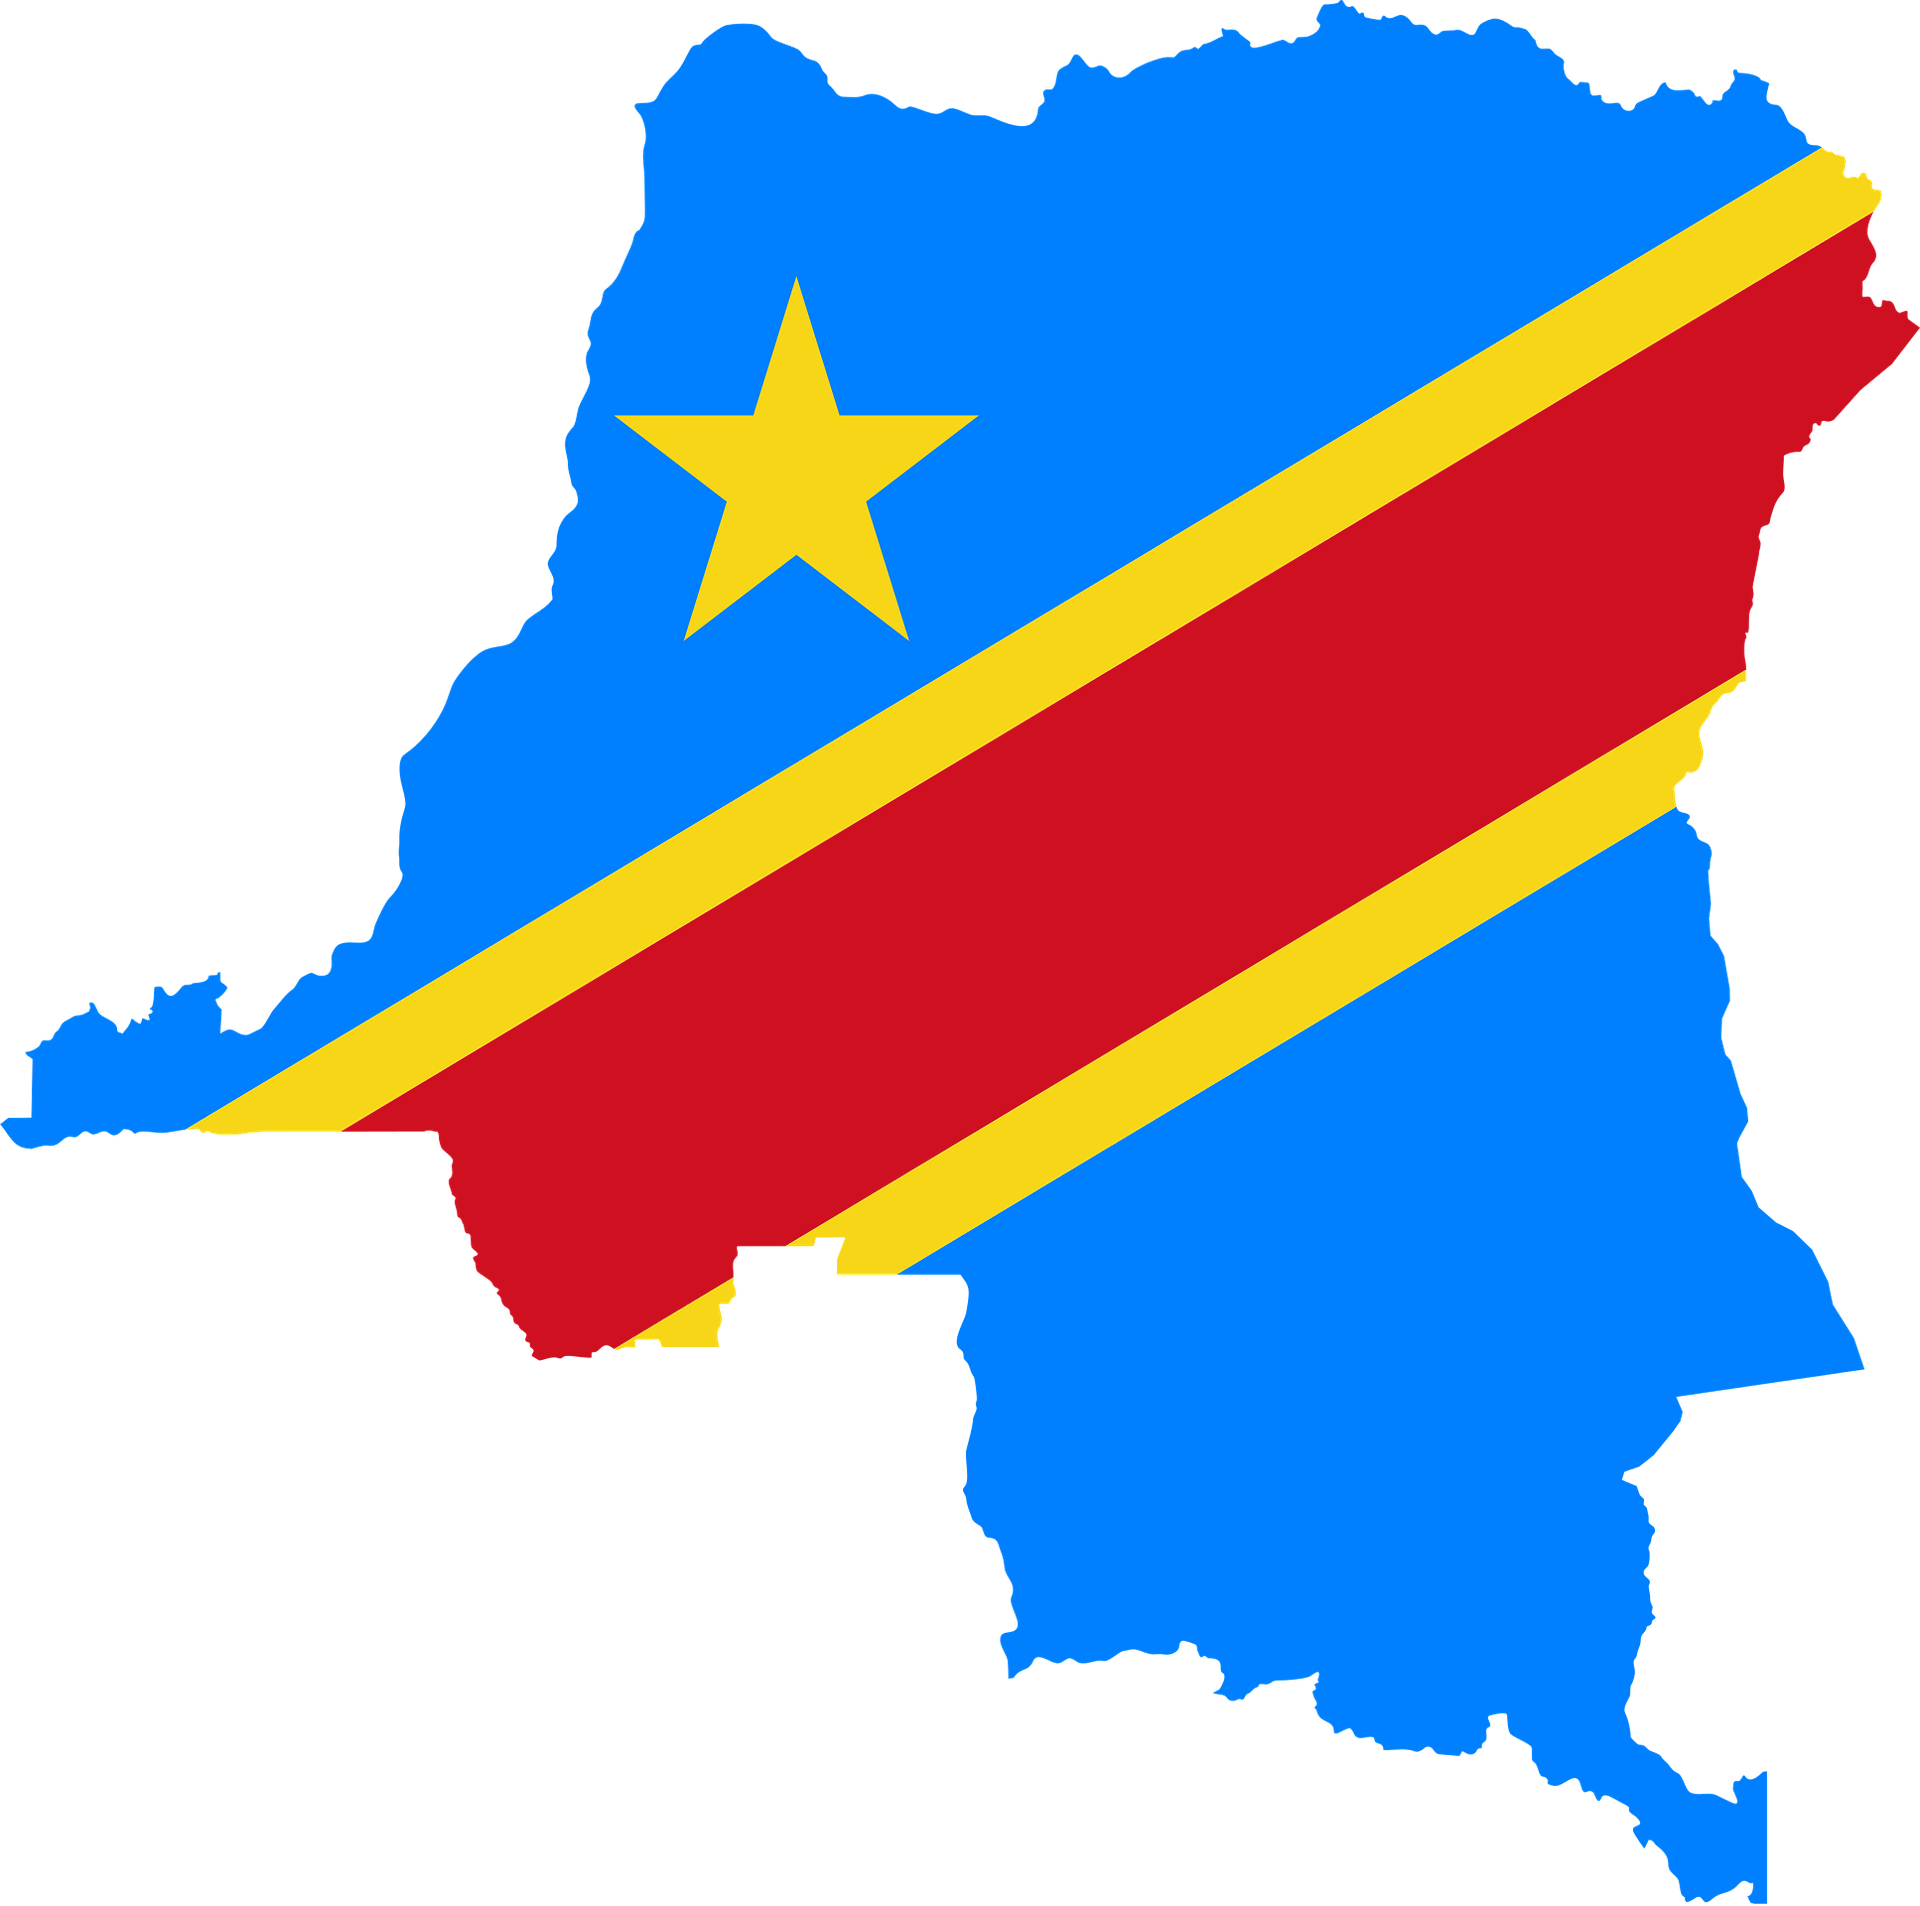 El litio de RD Congo atrae nuevas inversiones